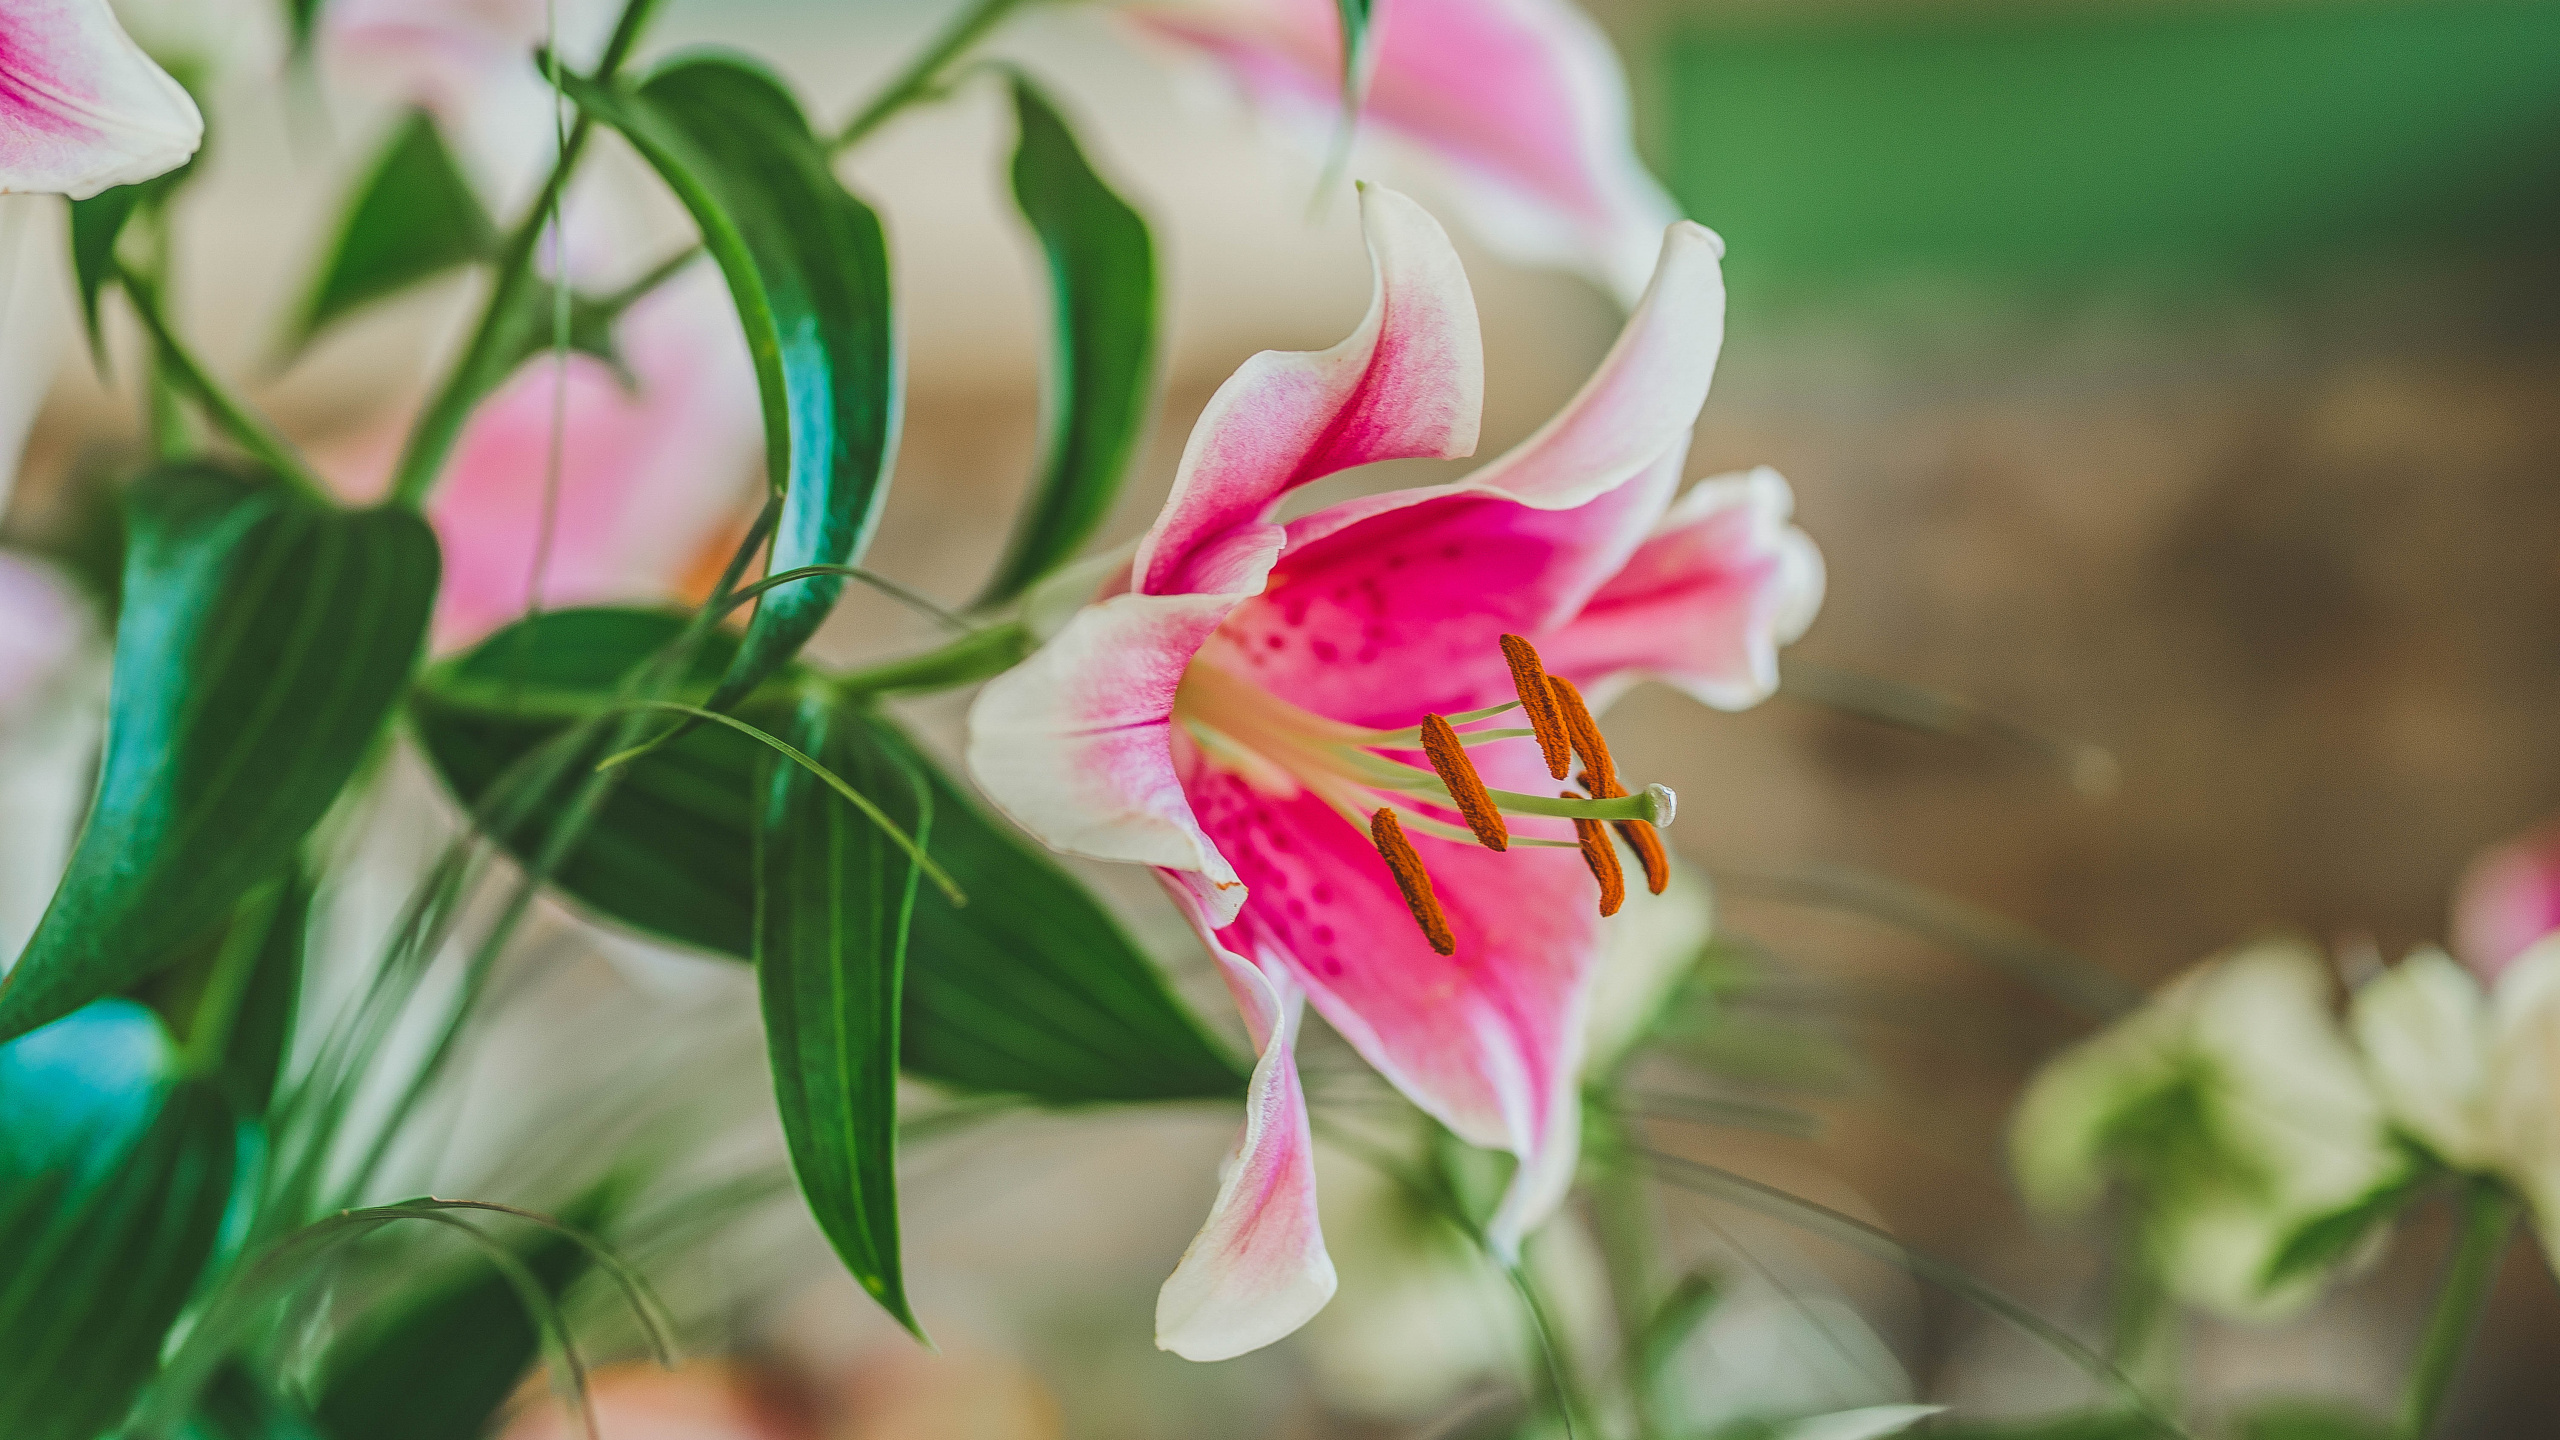 Pink and White Flower in Tilt Shift Lens. Wallpaper in 2560x1440 Resolution